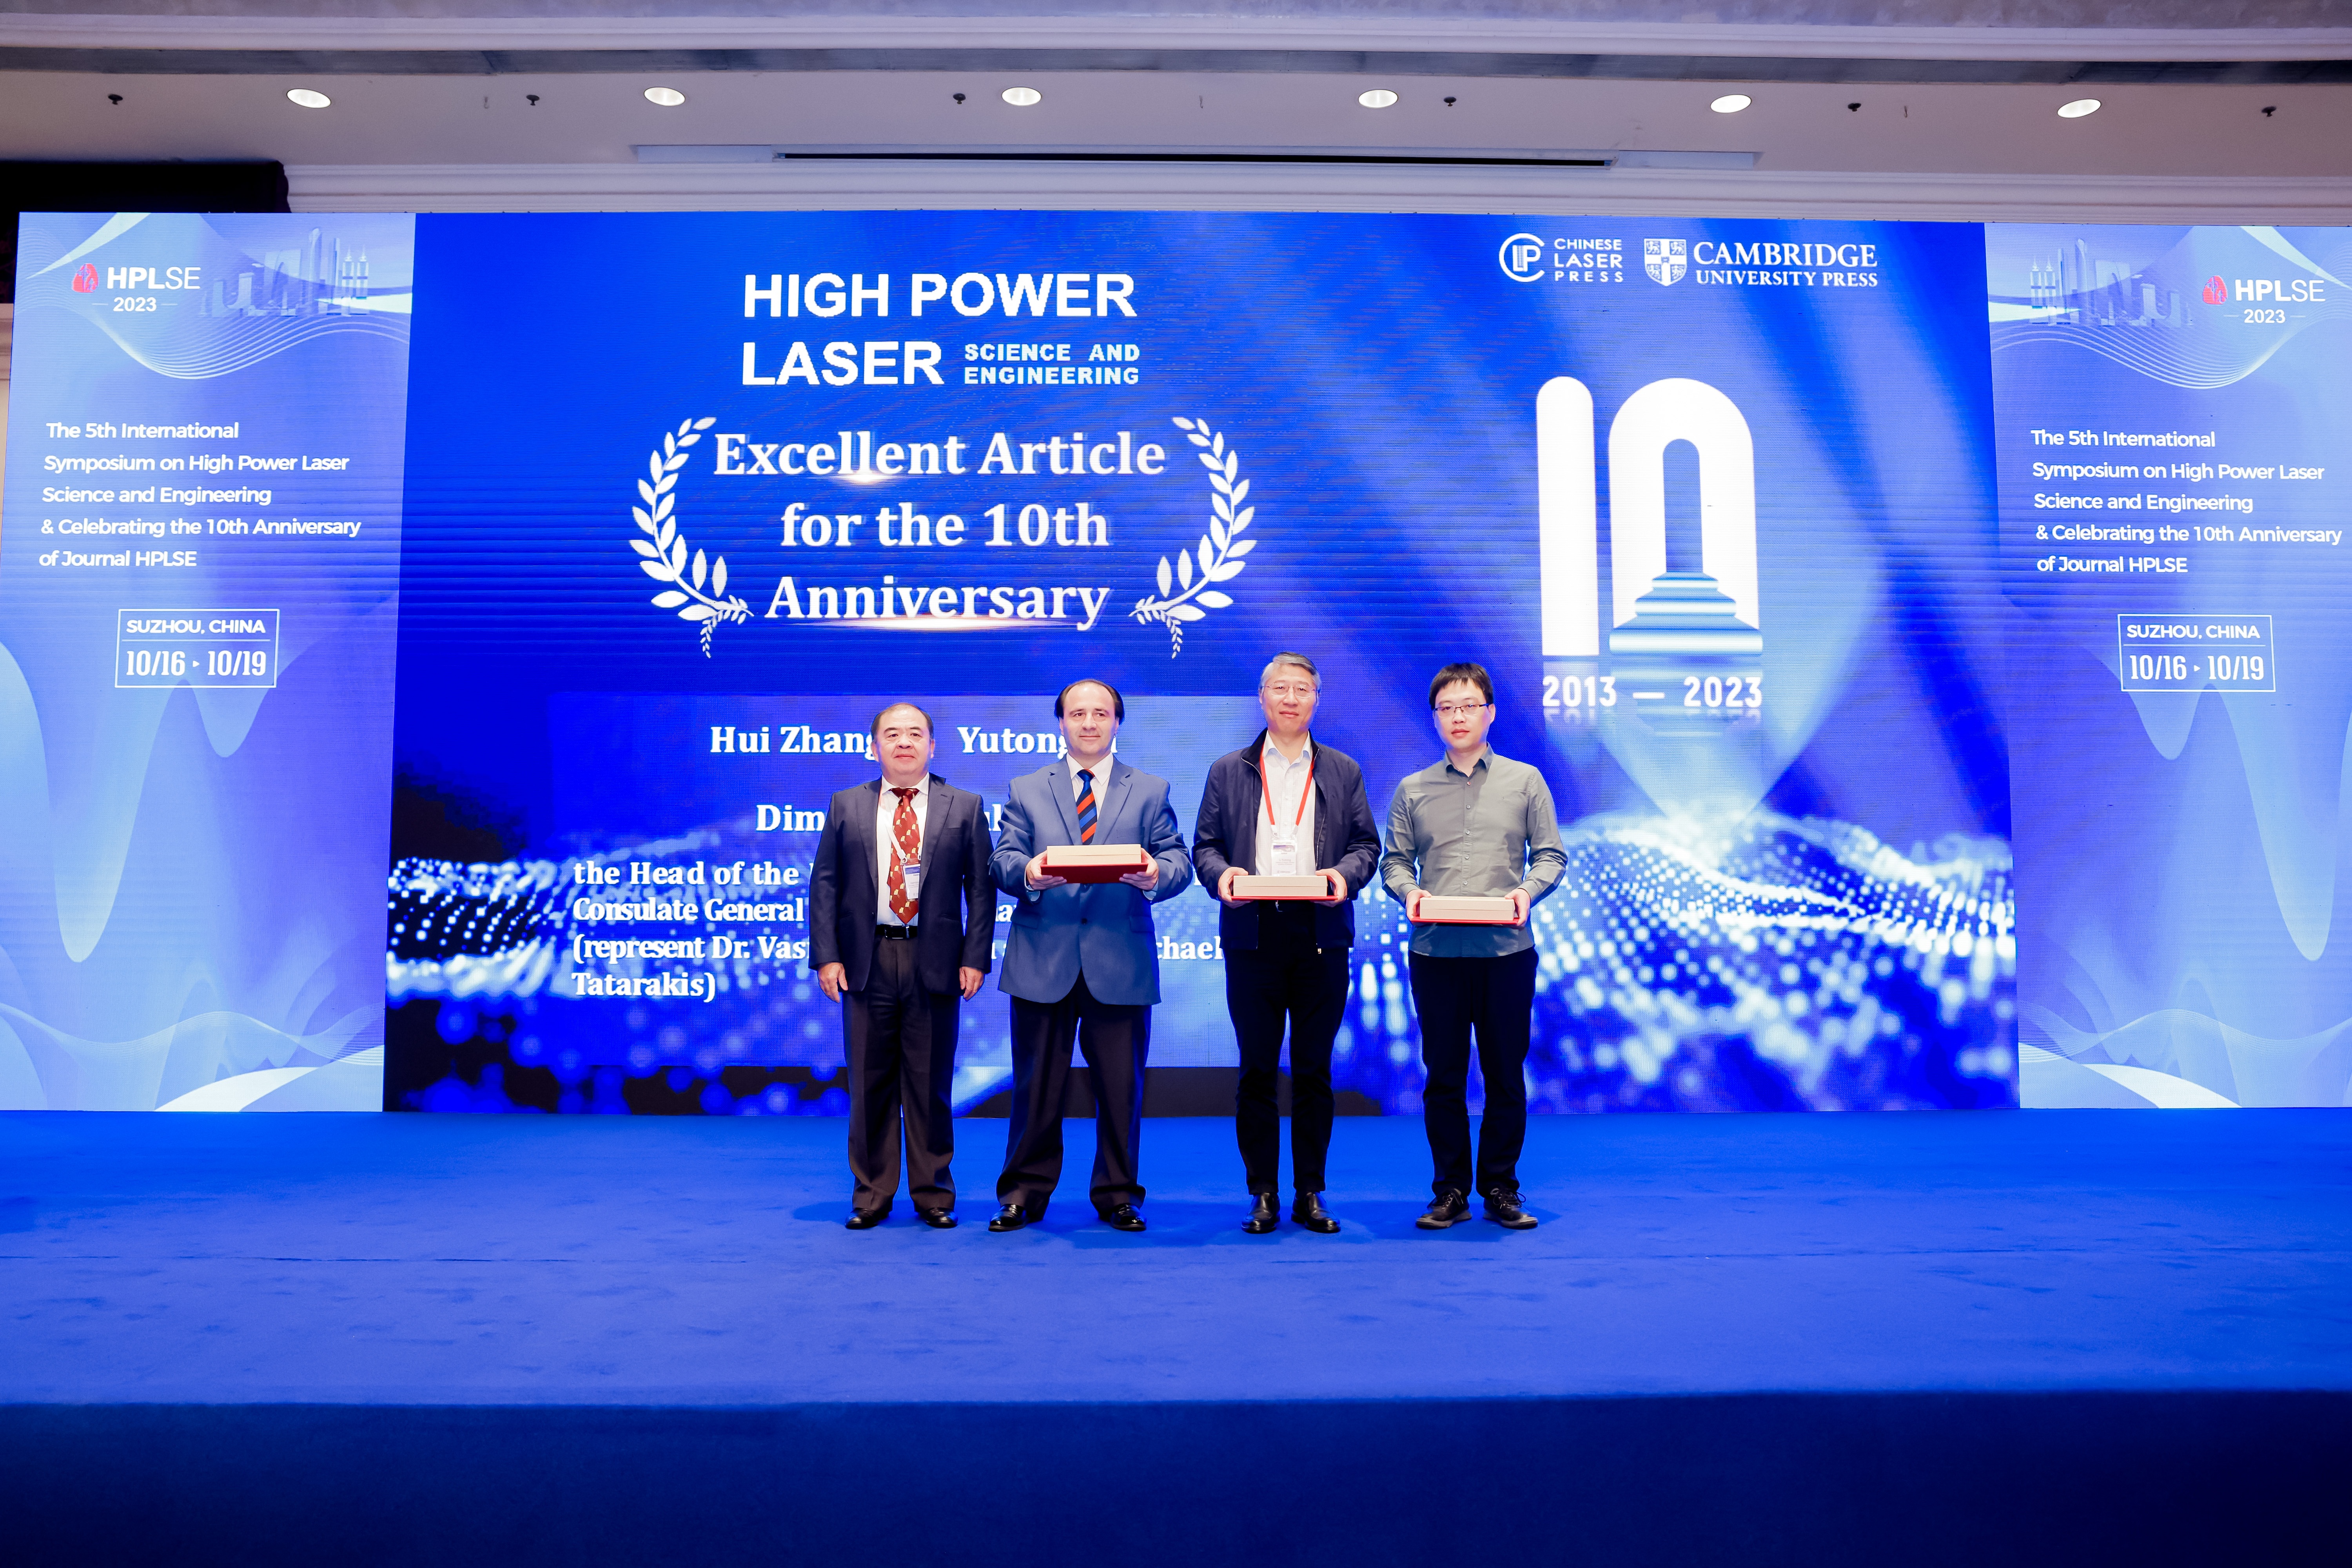 Award winners in attendance (Left to right: Jianqiang Zhu, Dimitrios Foukis, Yutong Li, Hui Zhang)